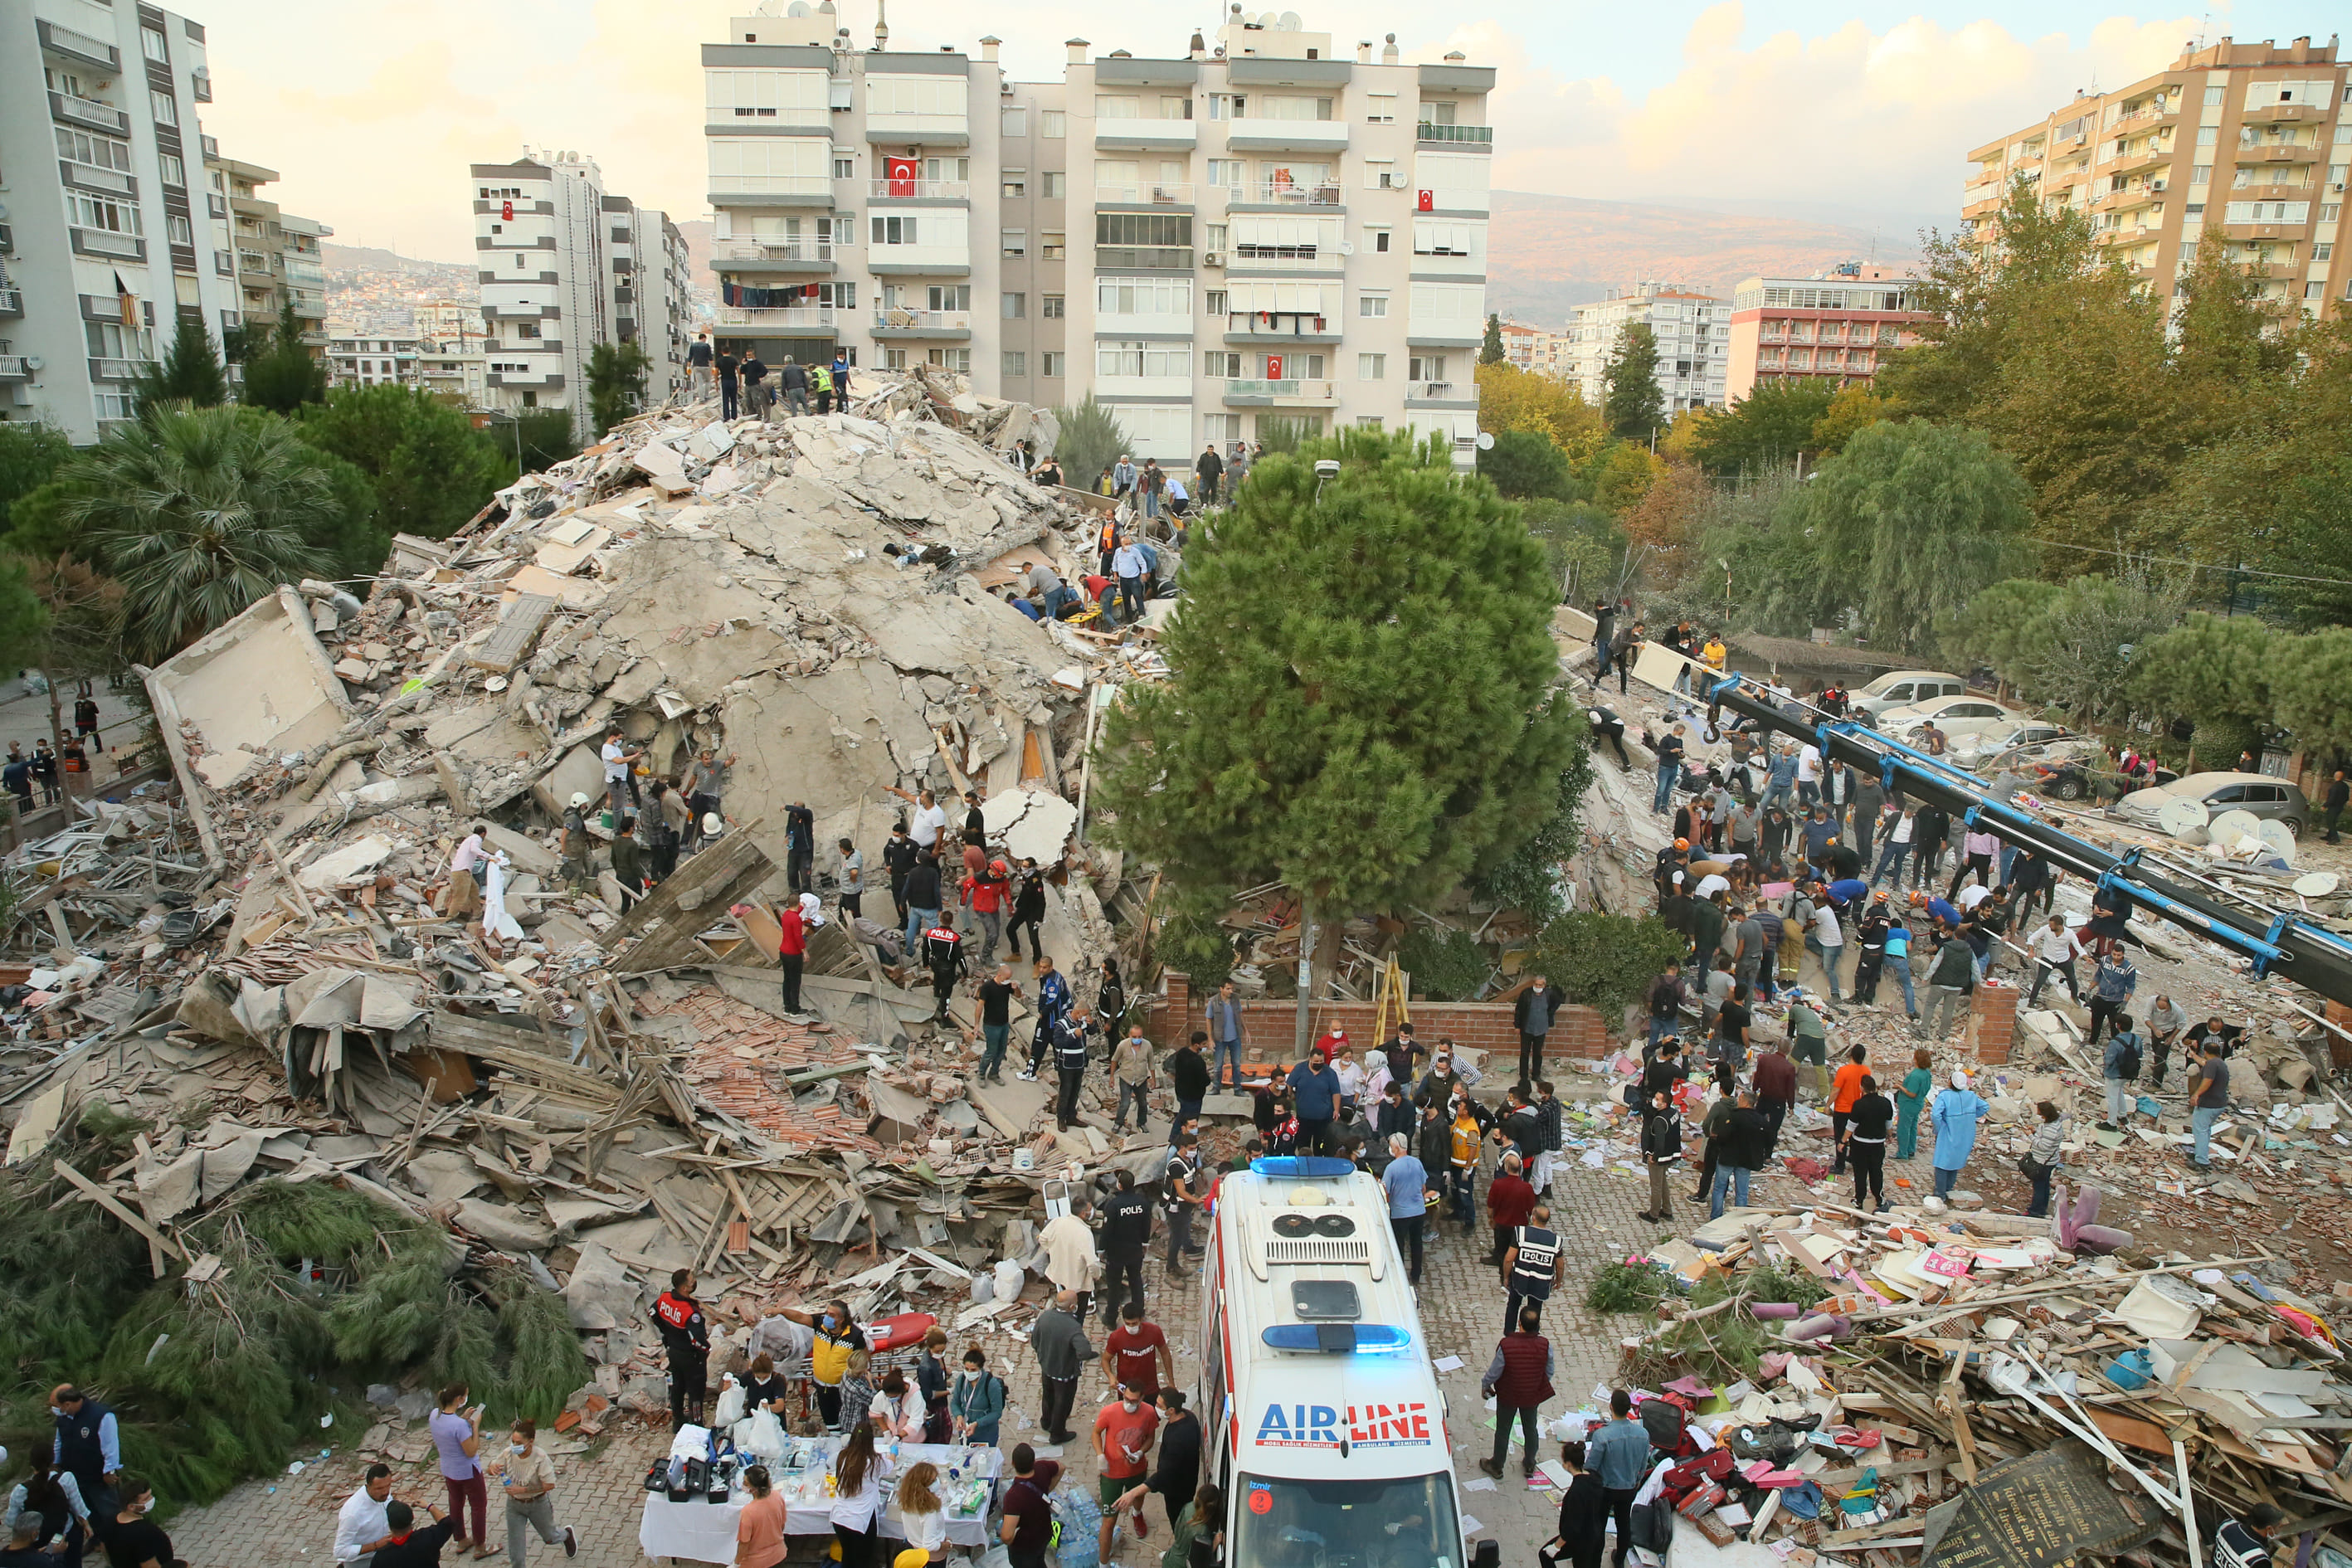 Где произошло сильное землетрясение. Измир Турция землетрясение 2020. Измит Турция 1999 землетрясение. Измир Турция землетрясение 1999. Землетрясение в Турции 1999 год.